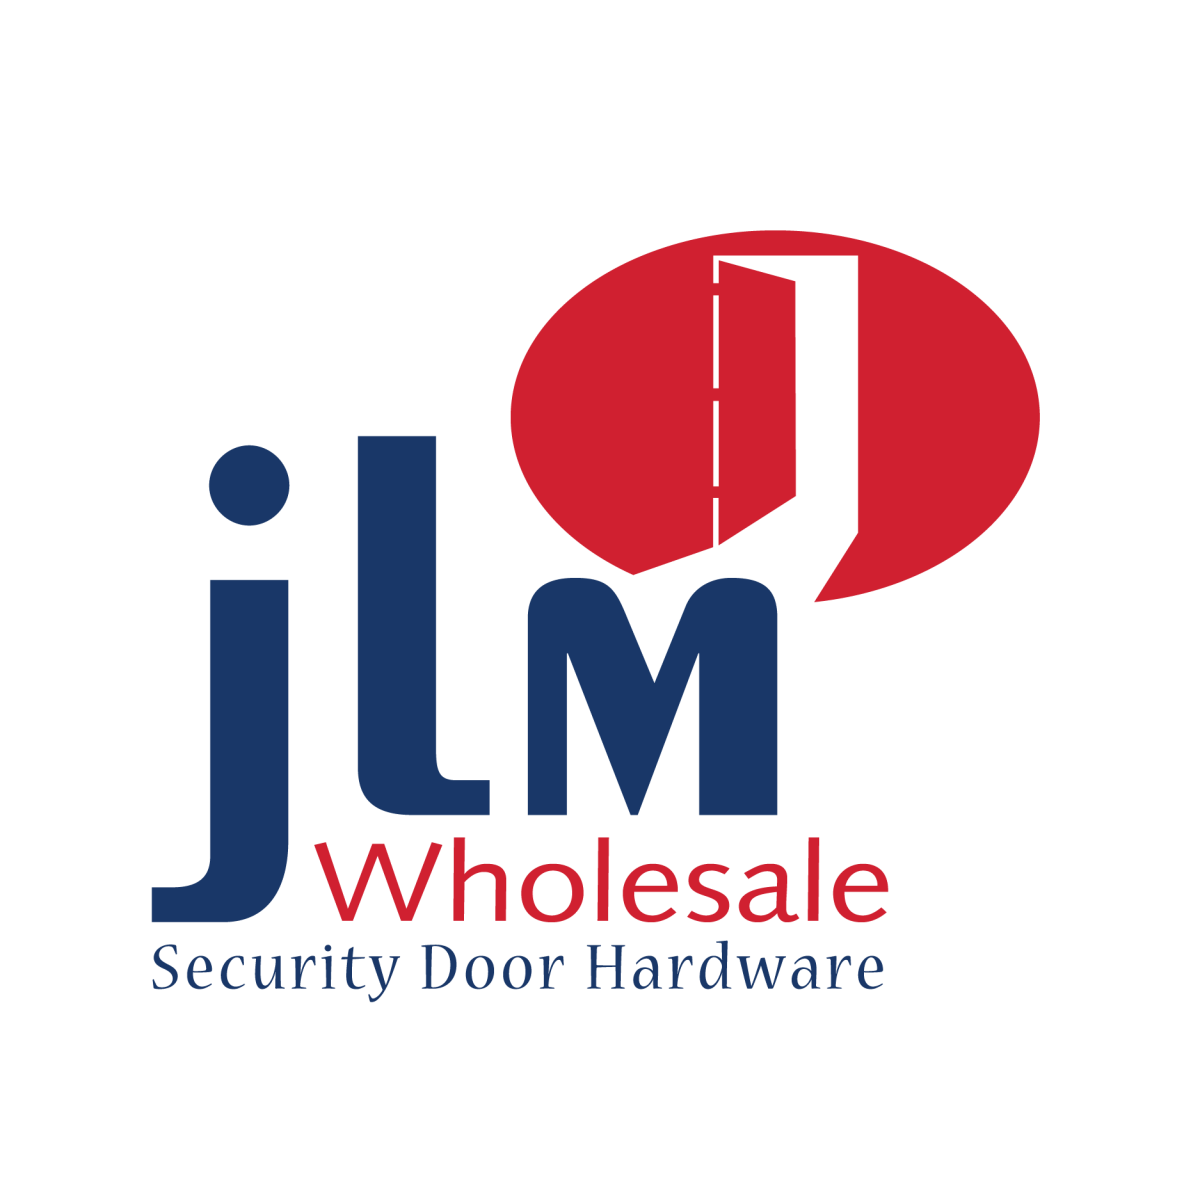 JLM Wholesale